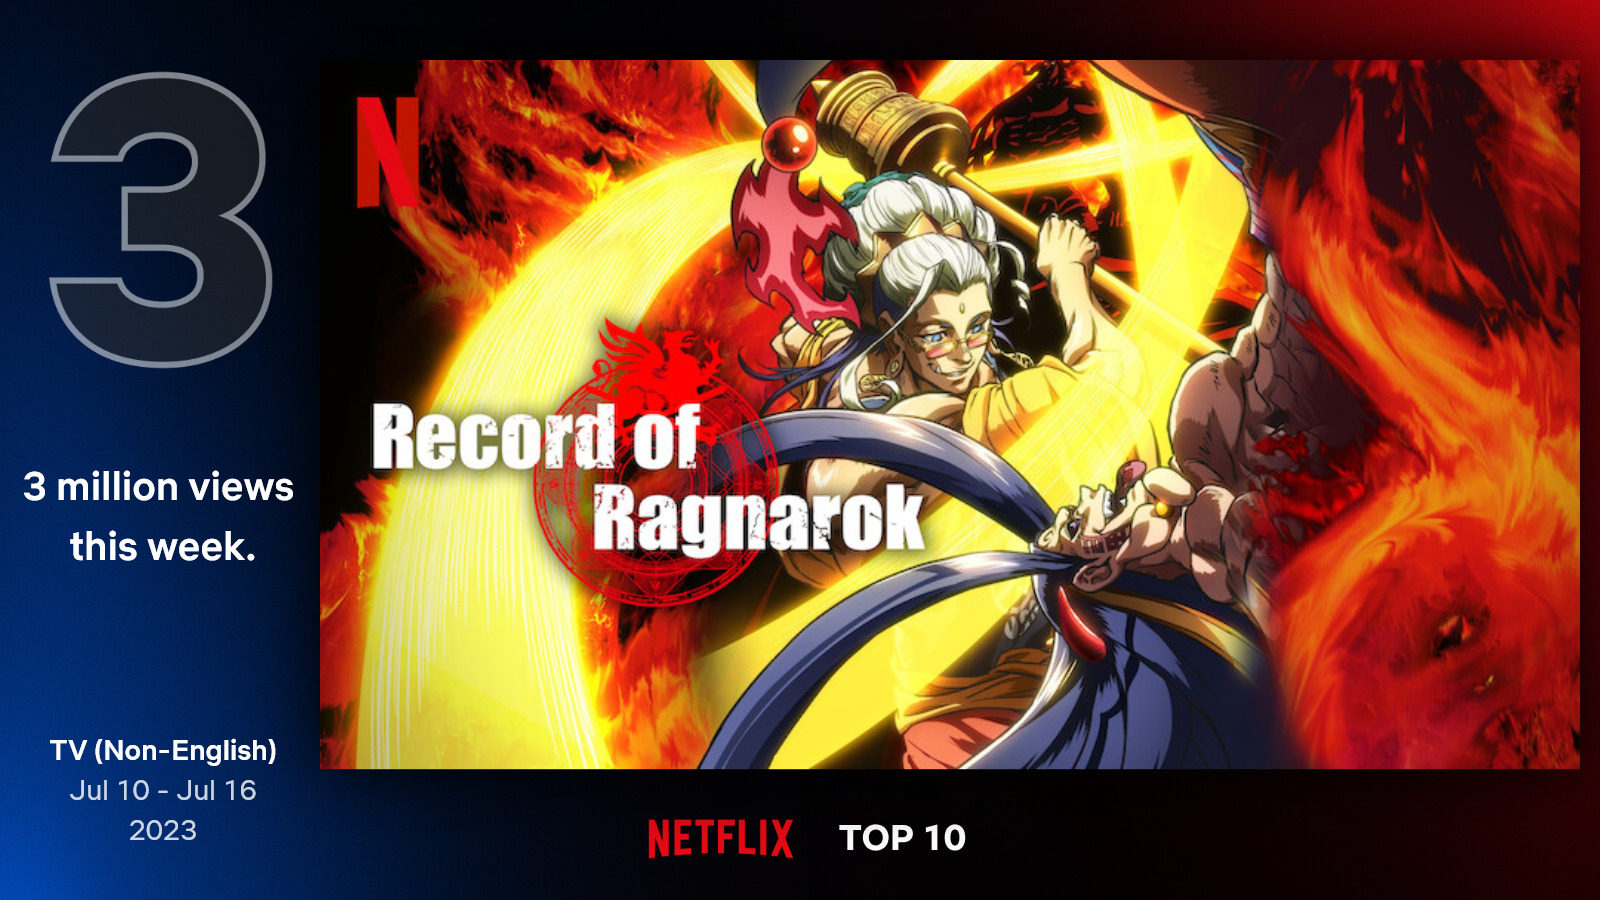 Record of Ragnarok BR - Agora é Oficial a segunda temporada de Shuumatsu  foi confirmada oficialmente pelo perfil no twitter, esta é uma imagem  comemorativa para a segunda temporada 😁🎉 Link